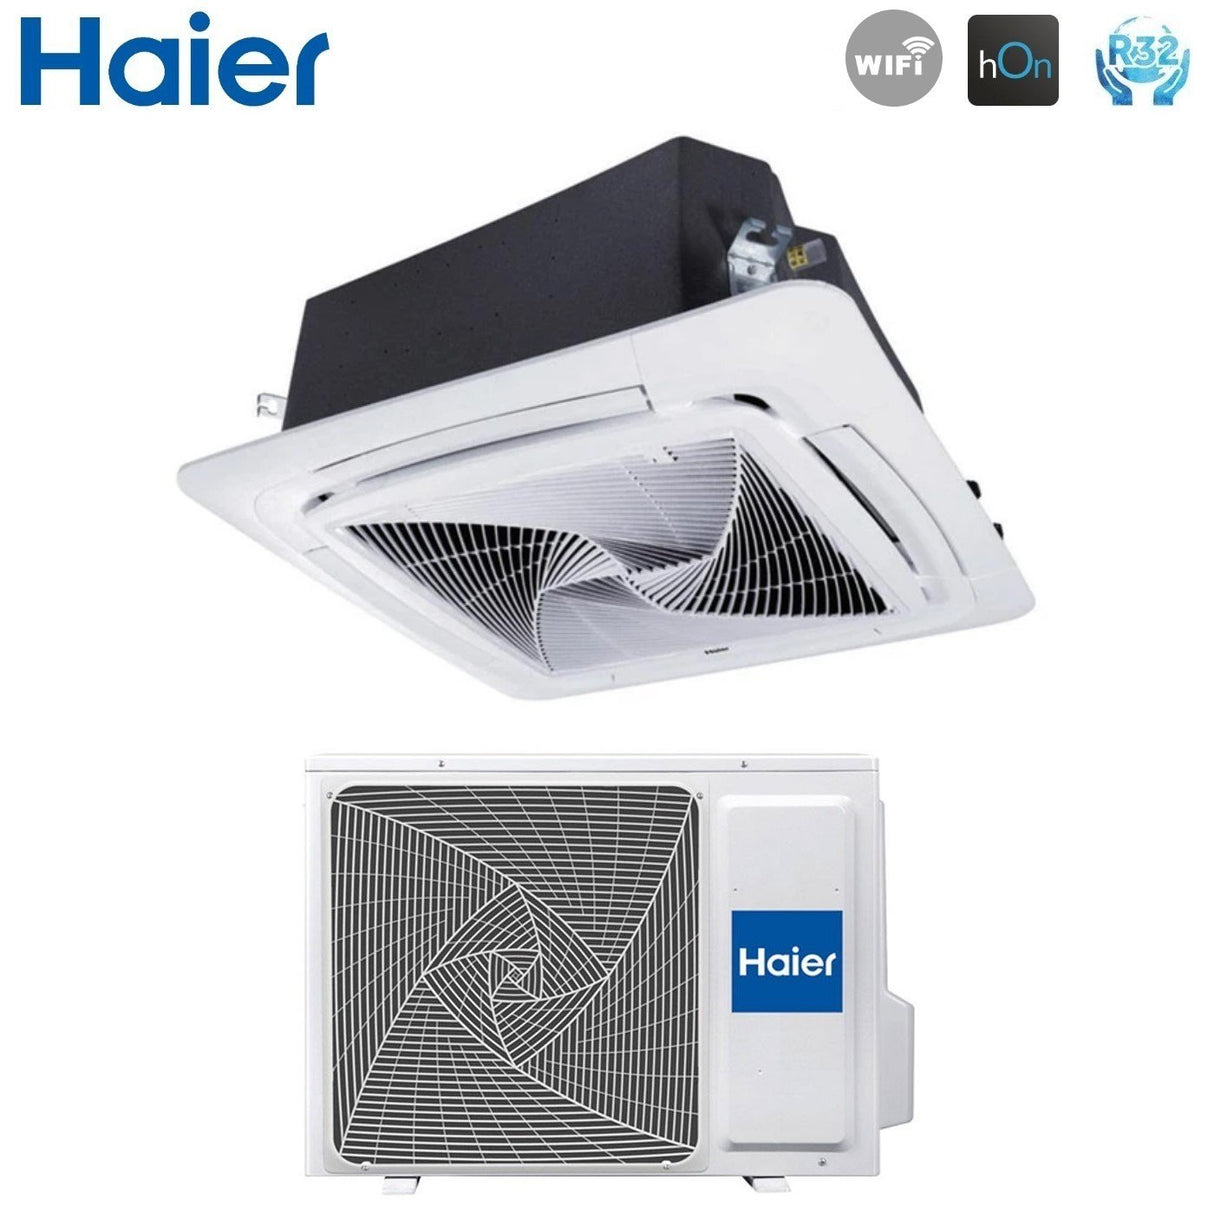 immagine-3-haier-climatizzatore-condizionatore-haier-cassetta-90x90-round-flow-24000-btu-ab71s2sg1fa-r-32-wi-fi-optional-con-pannello-no-sensor-incluso